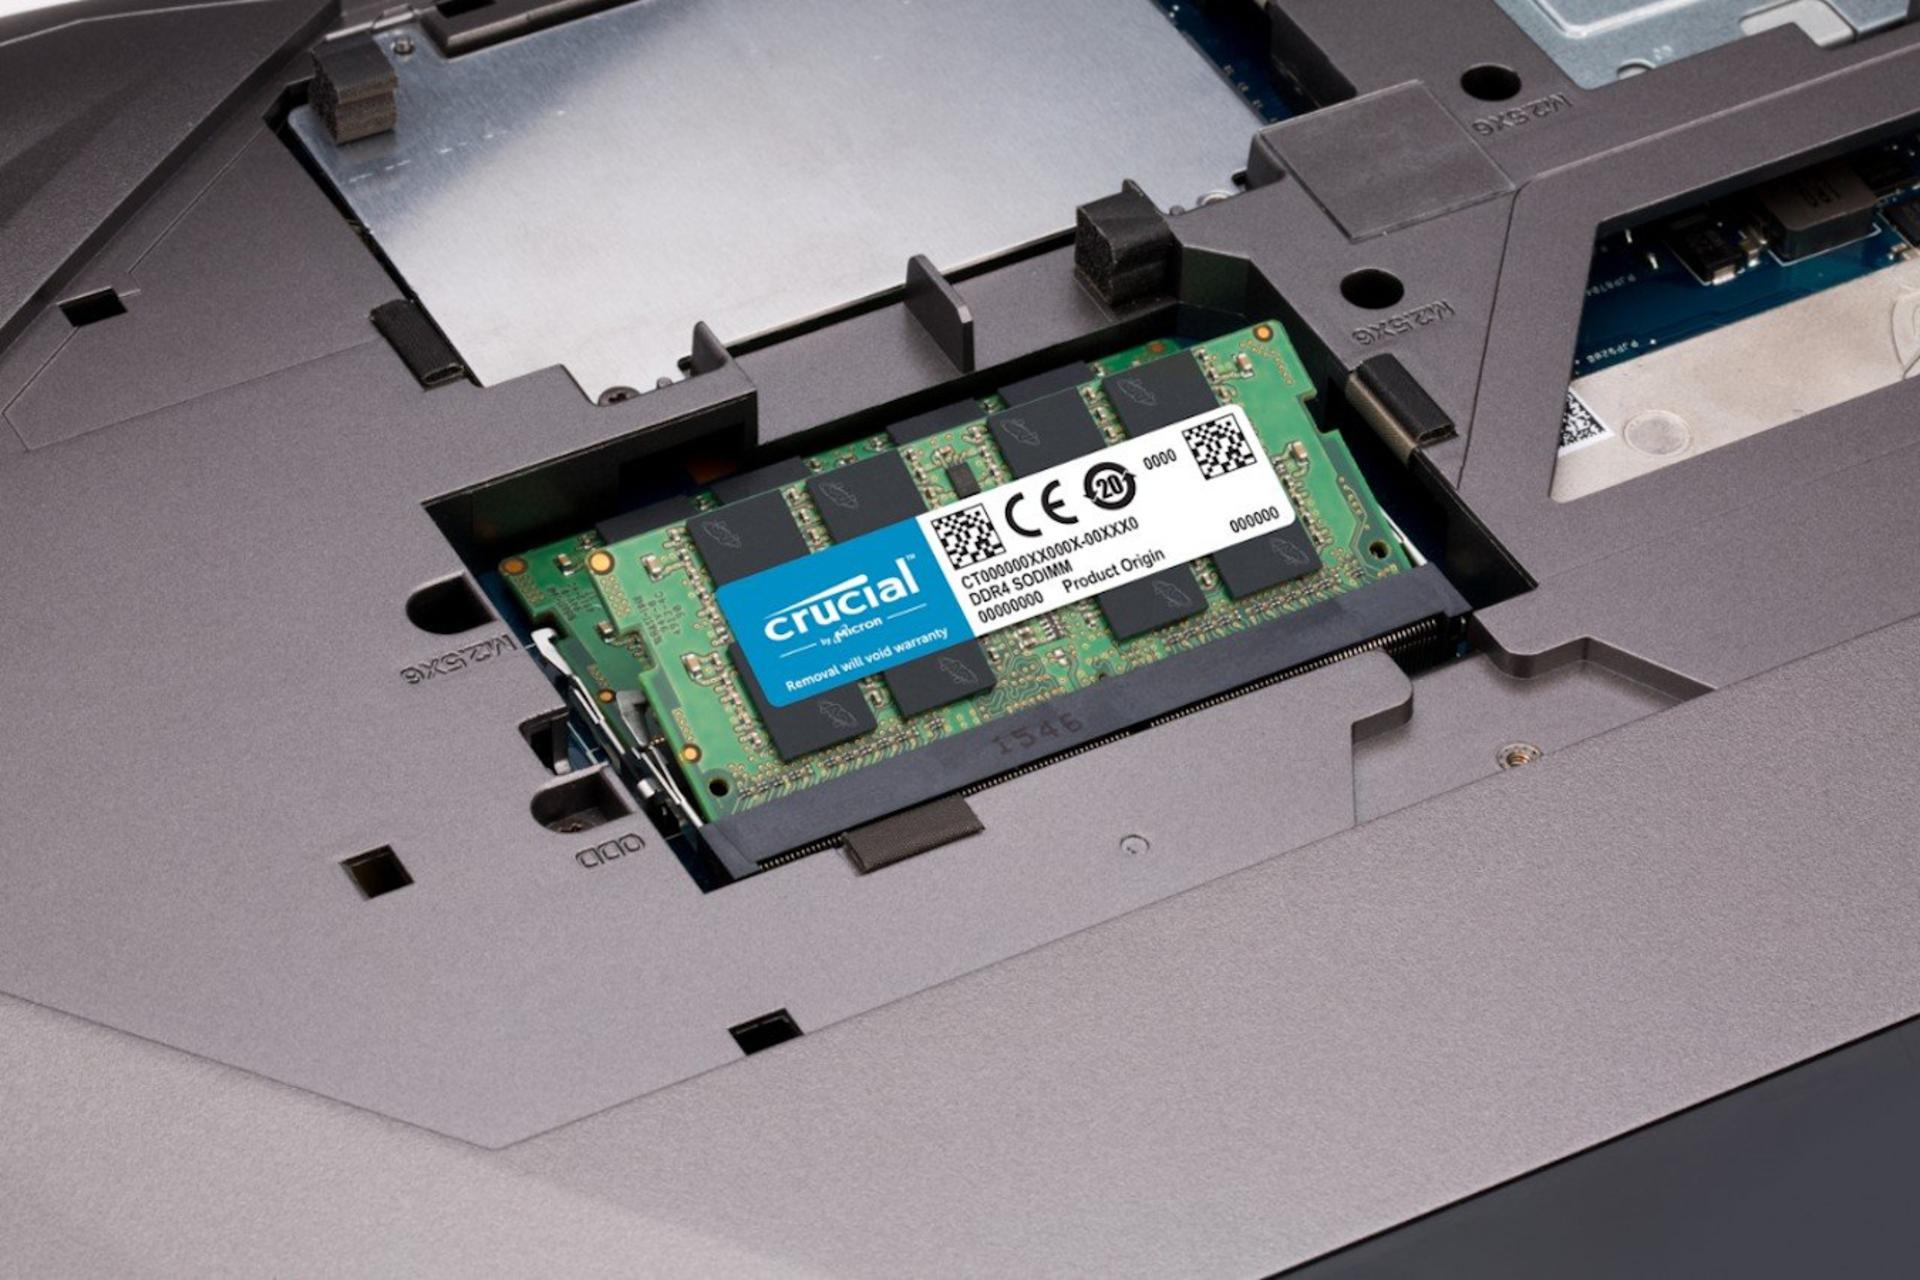 رم کروشیال Crucial CT8G4SFD8213 ظرفیت 8 گیگابایت از نوع DDR4-2133 داخل لپ تاپ